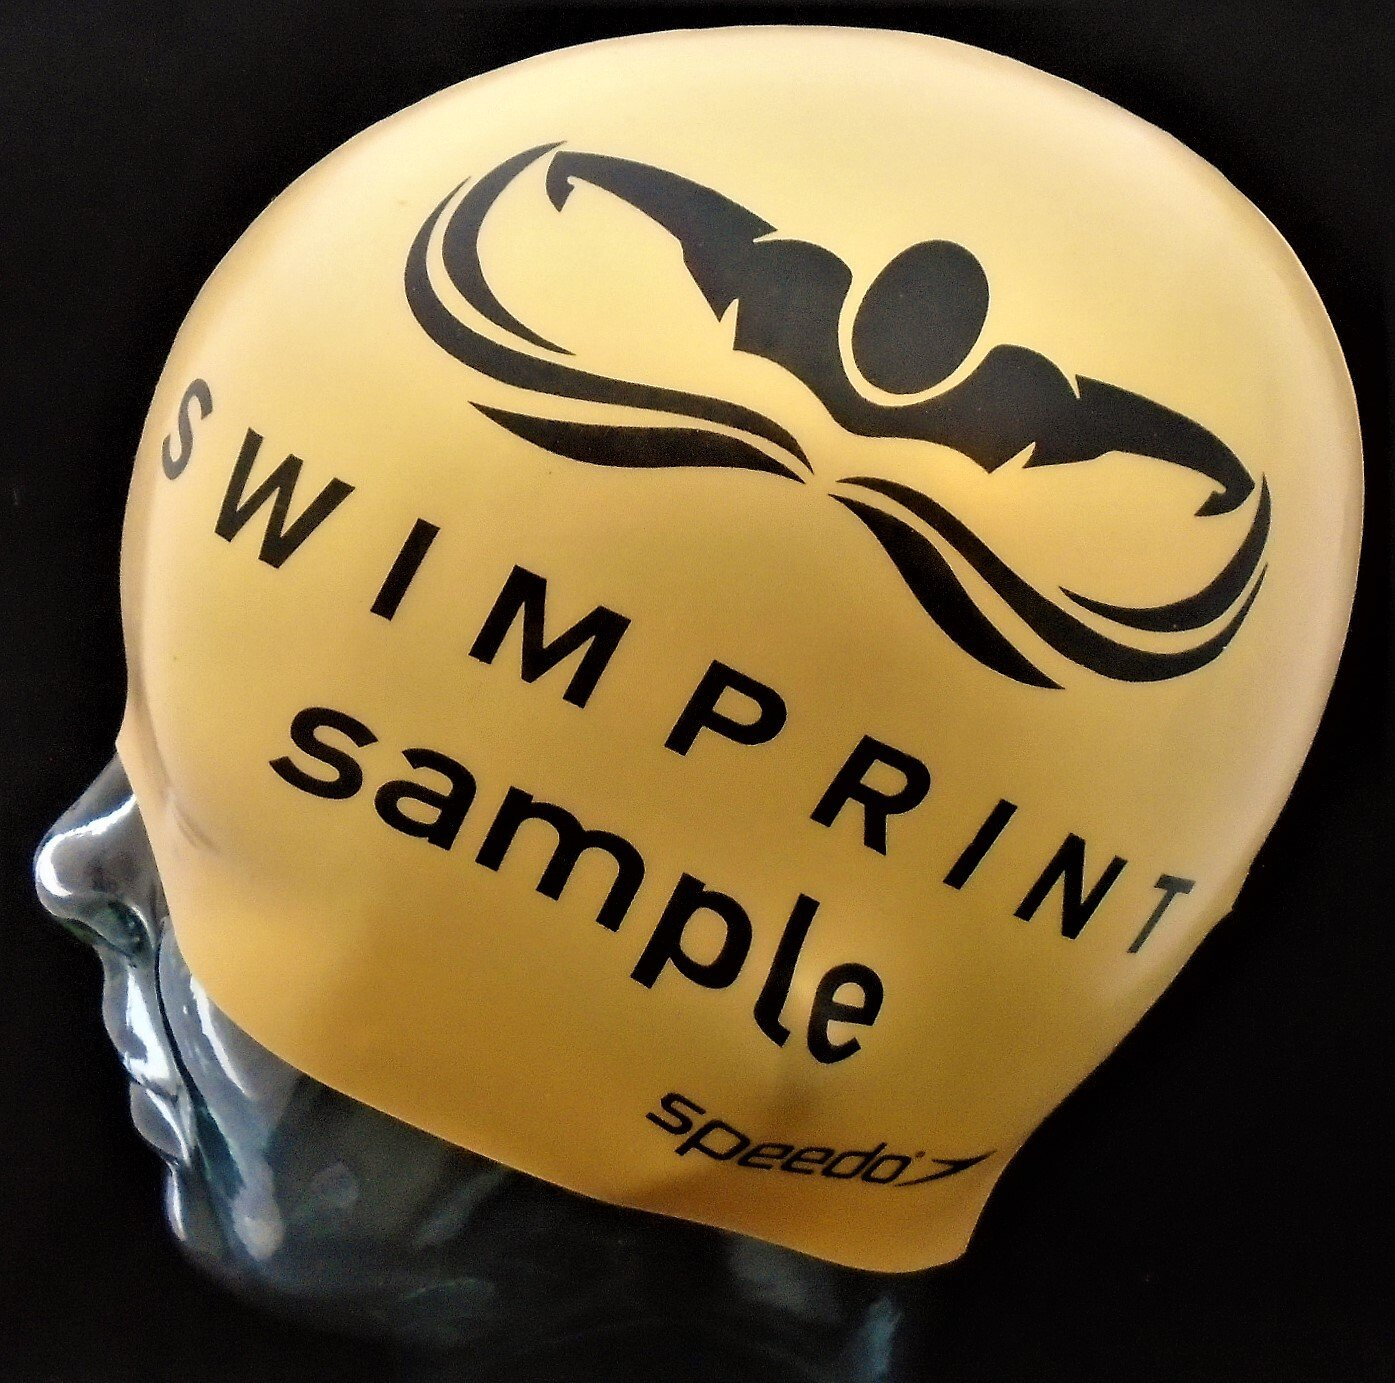 A speedo swim cap that says swimprint sample on it